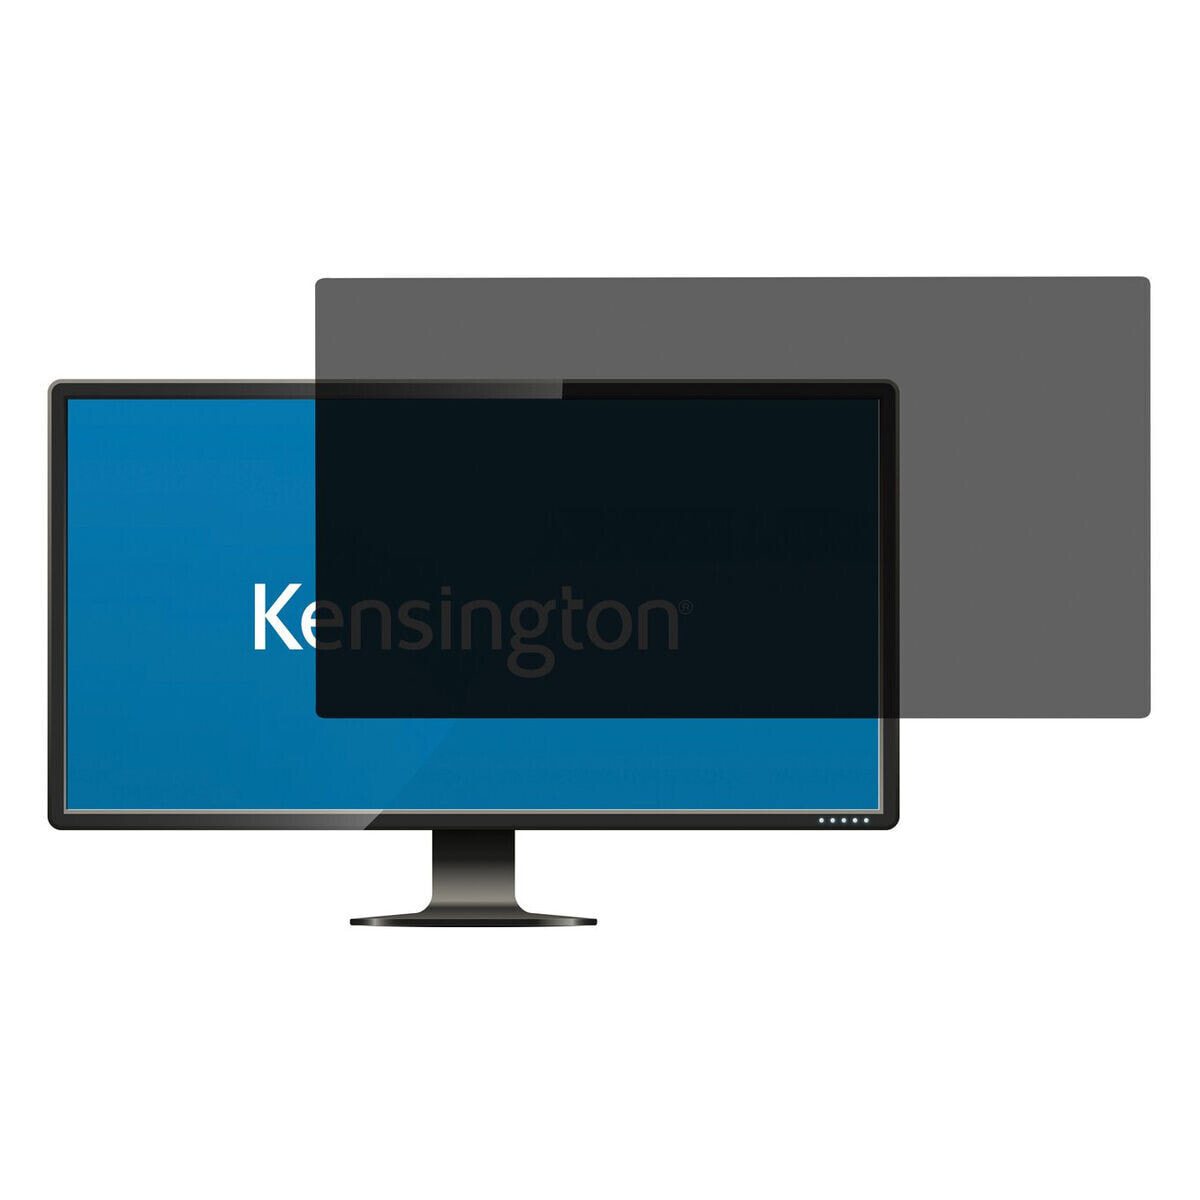 Фильтр для защиты конфиденциальности информации на мониторе Kensington 626485 23